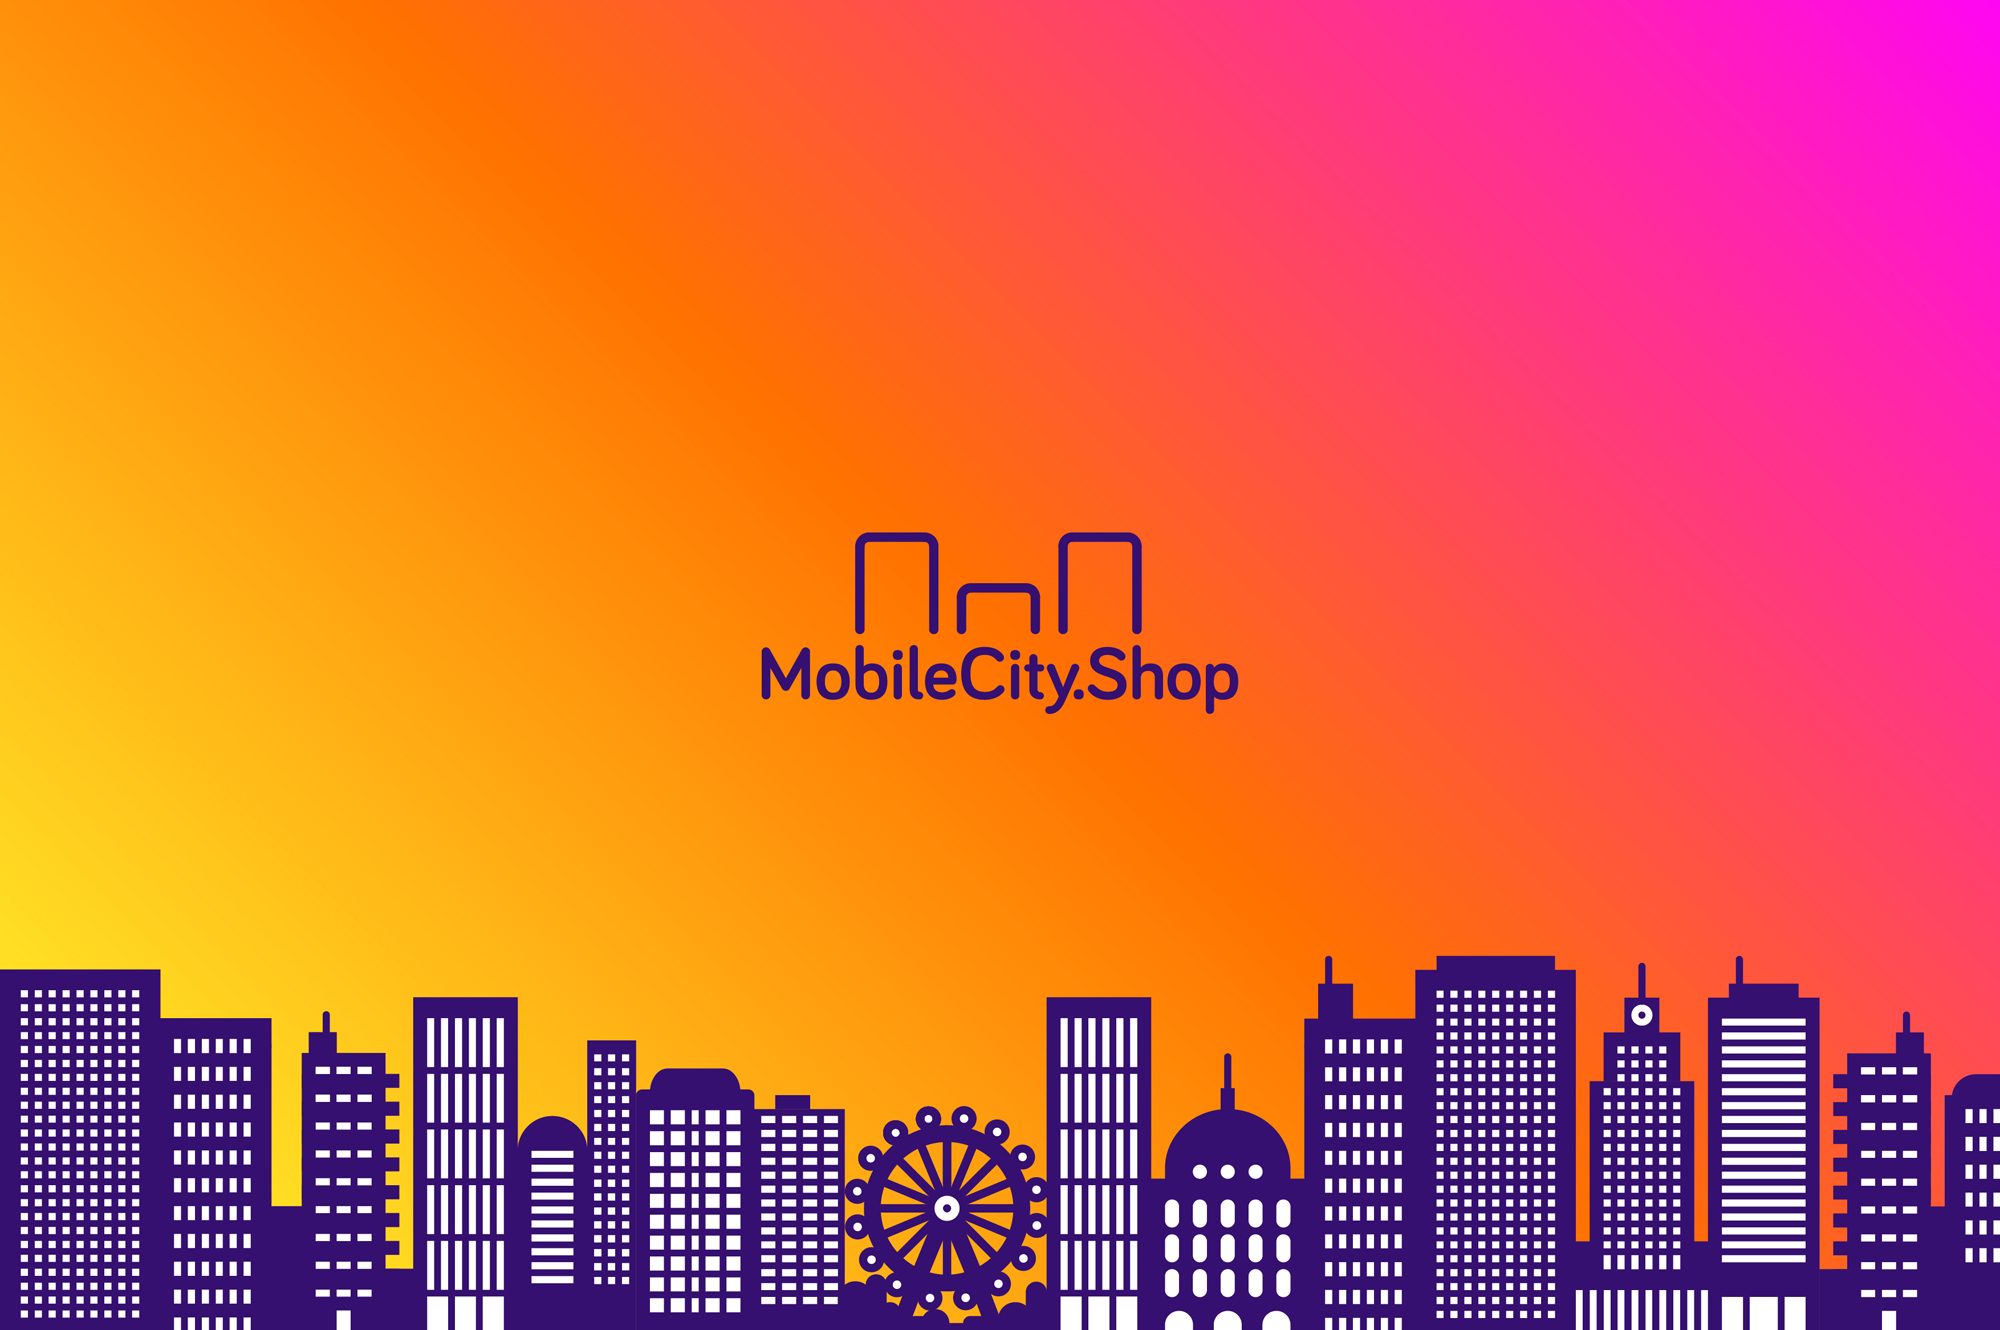 MobileCity.Shop - logo a KOLOR miasto